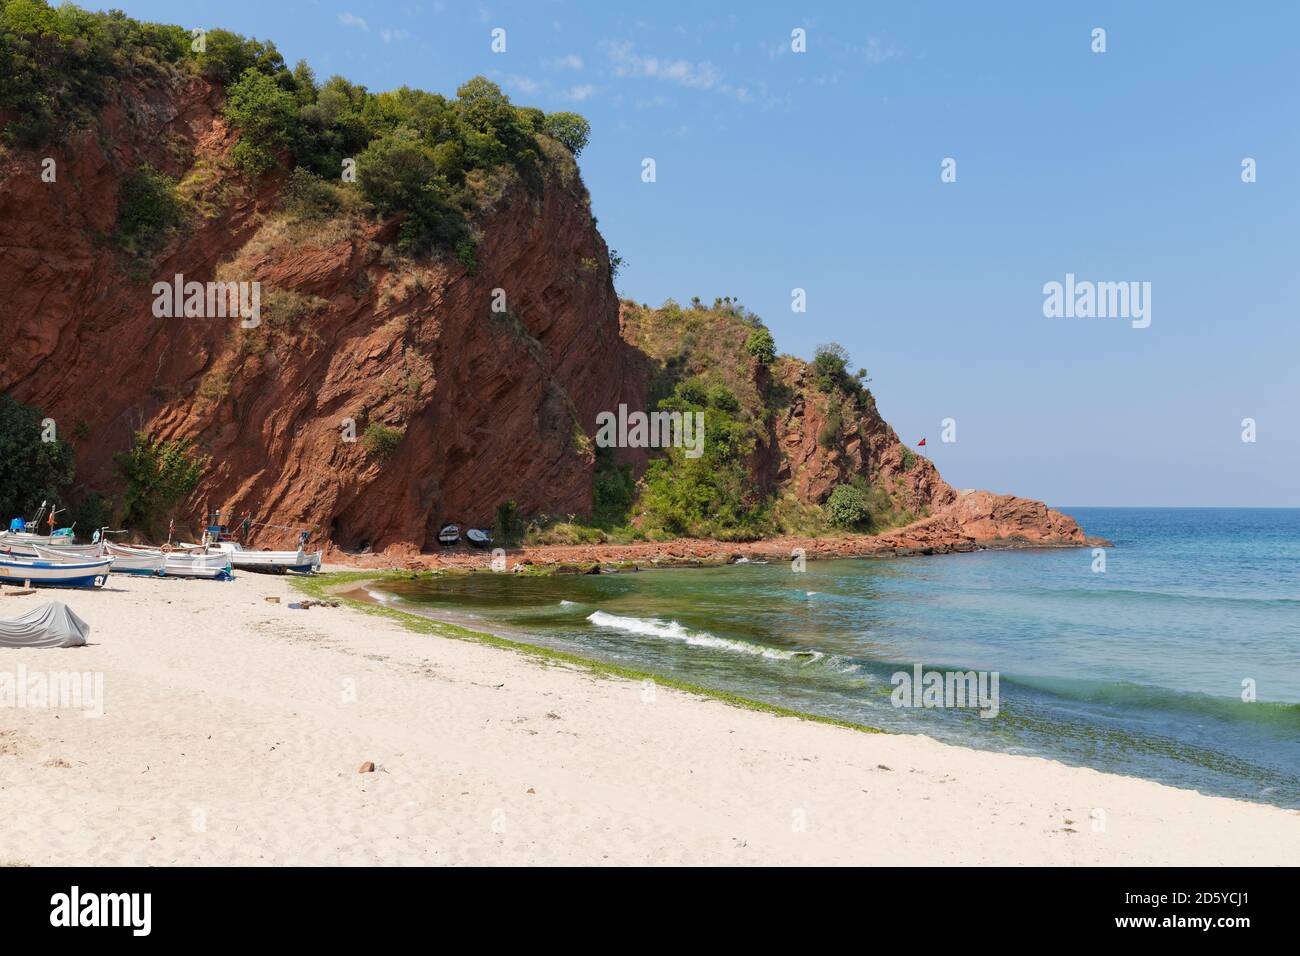 La Turchia, il Mar Nero, la spiaggia di Cakraz Foto Stock